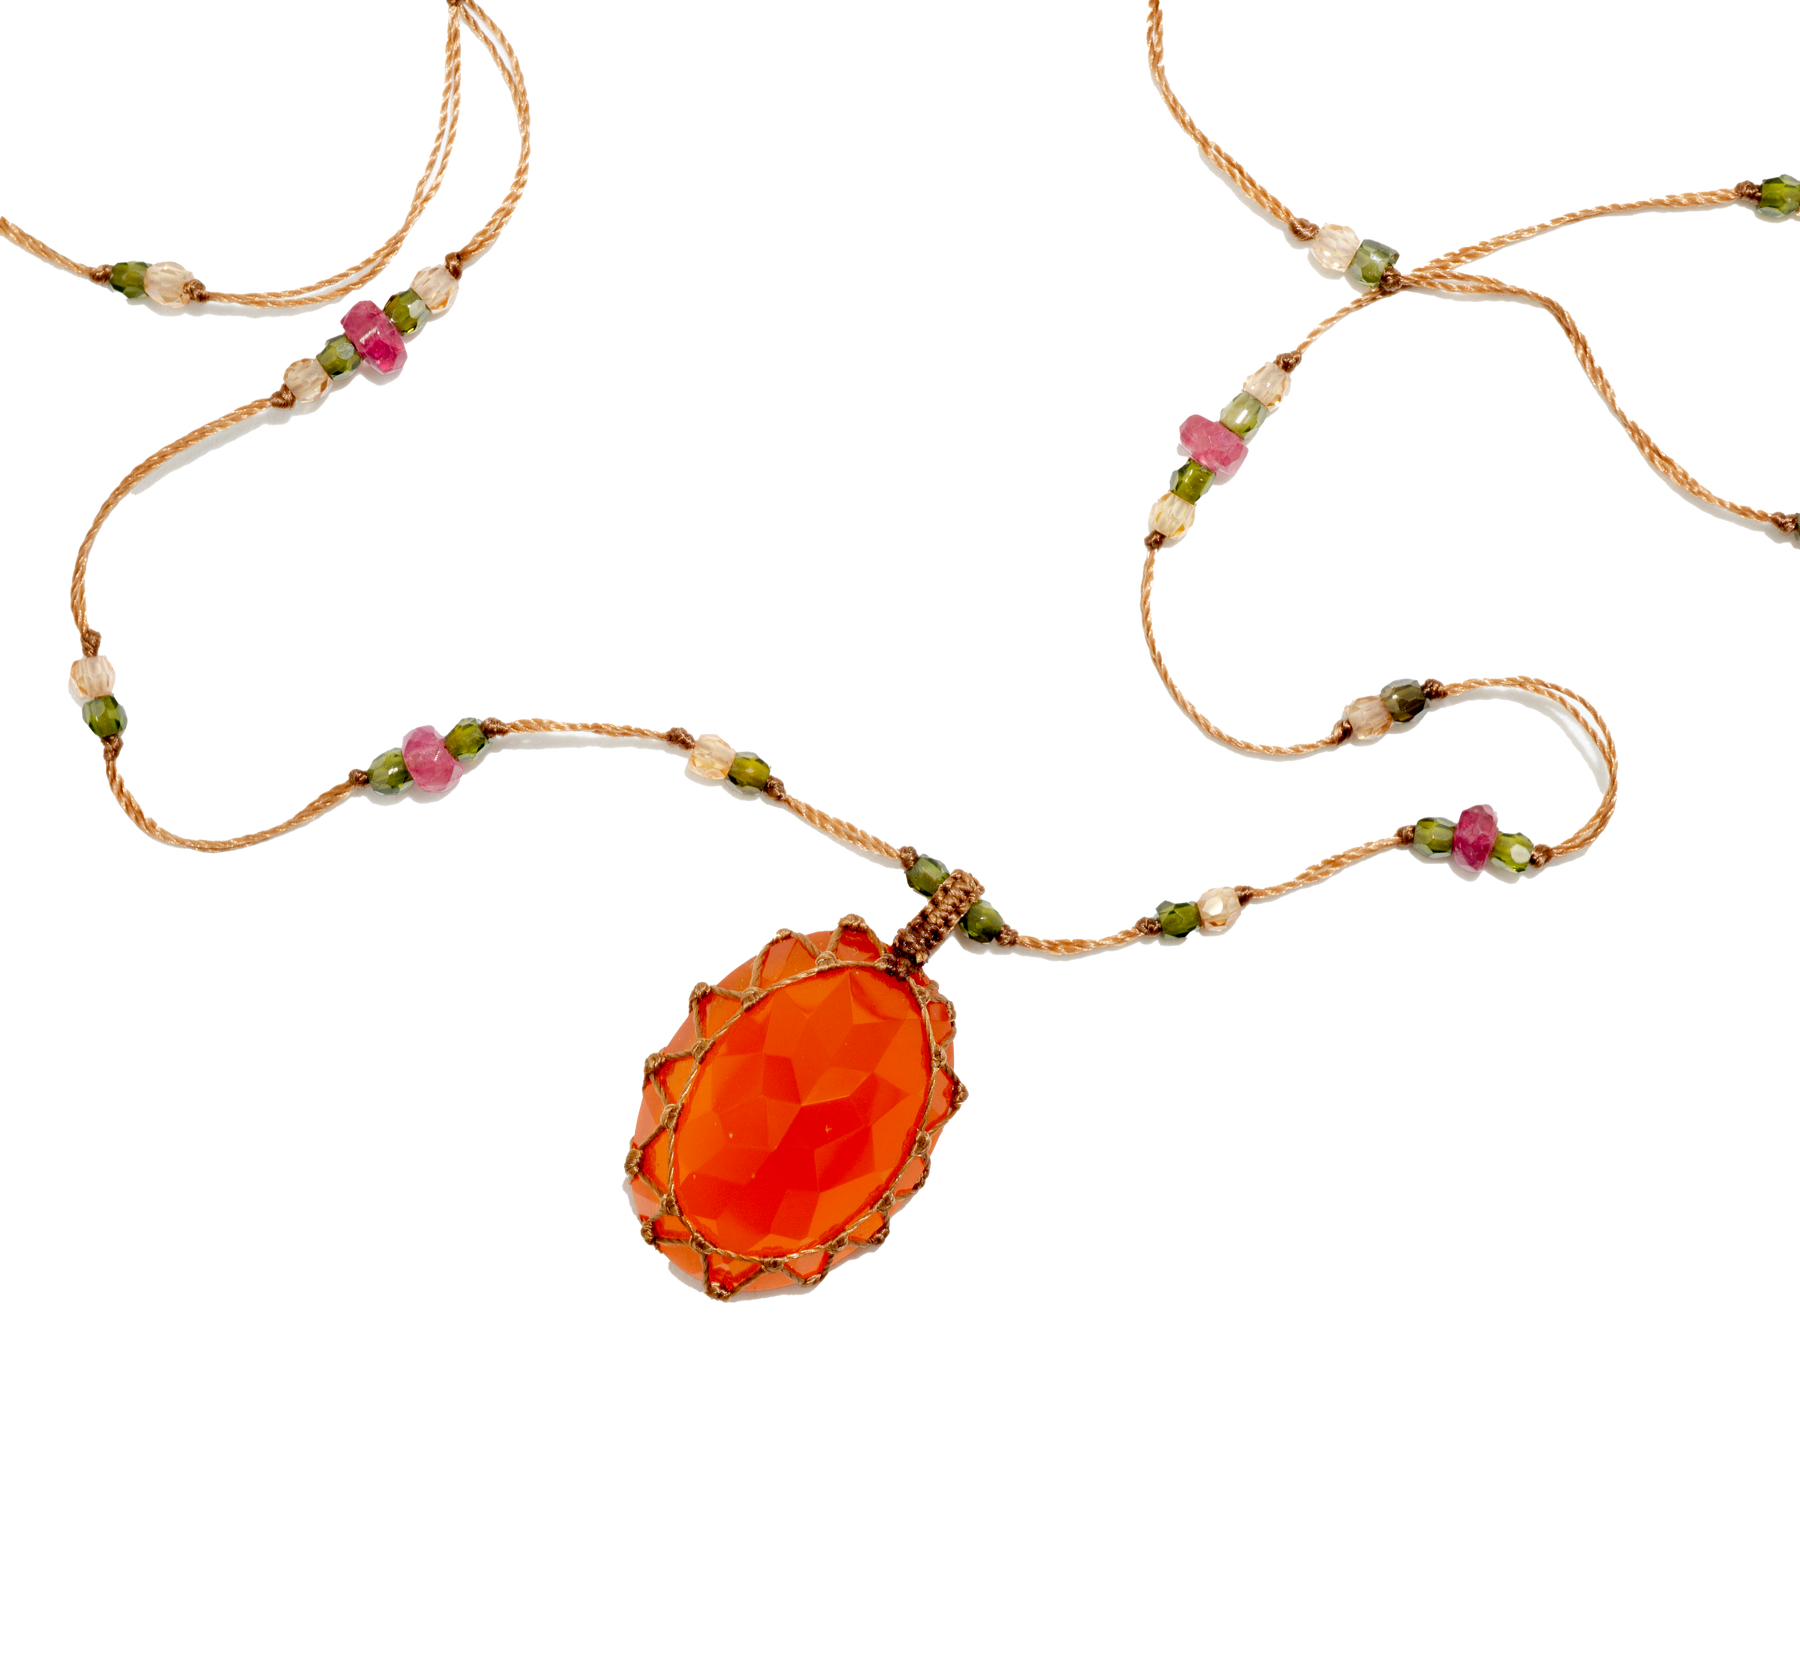 Short Tibetan Necklace - Orange Onyx - Mix Pink Tourmaline - Tobacco Thread